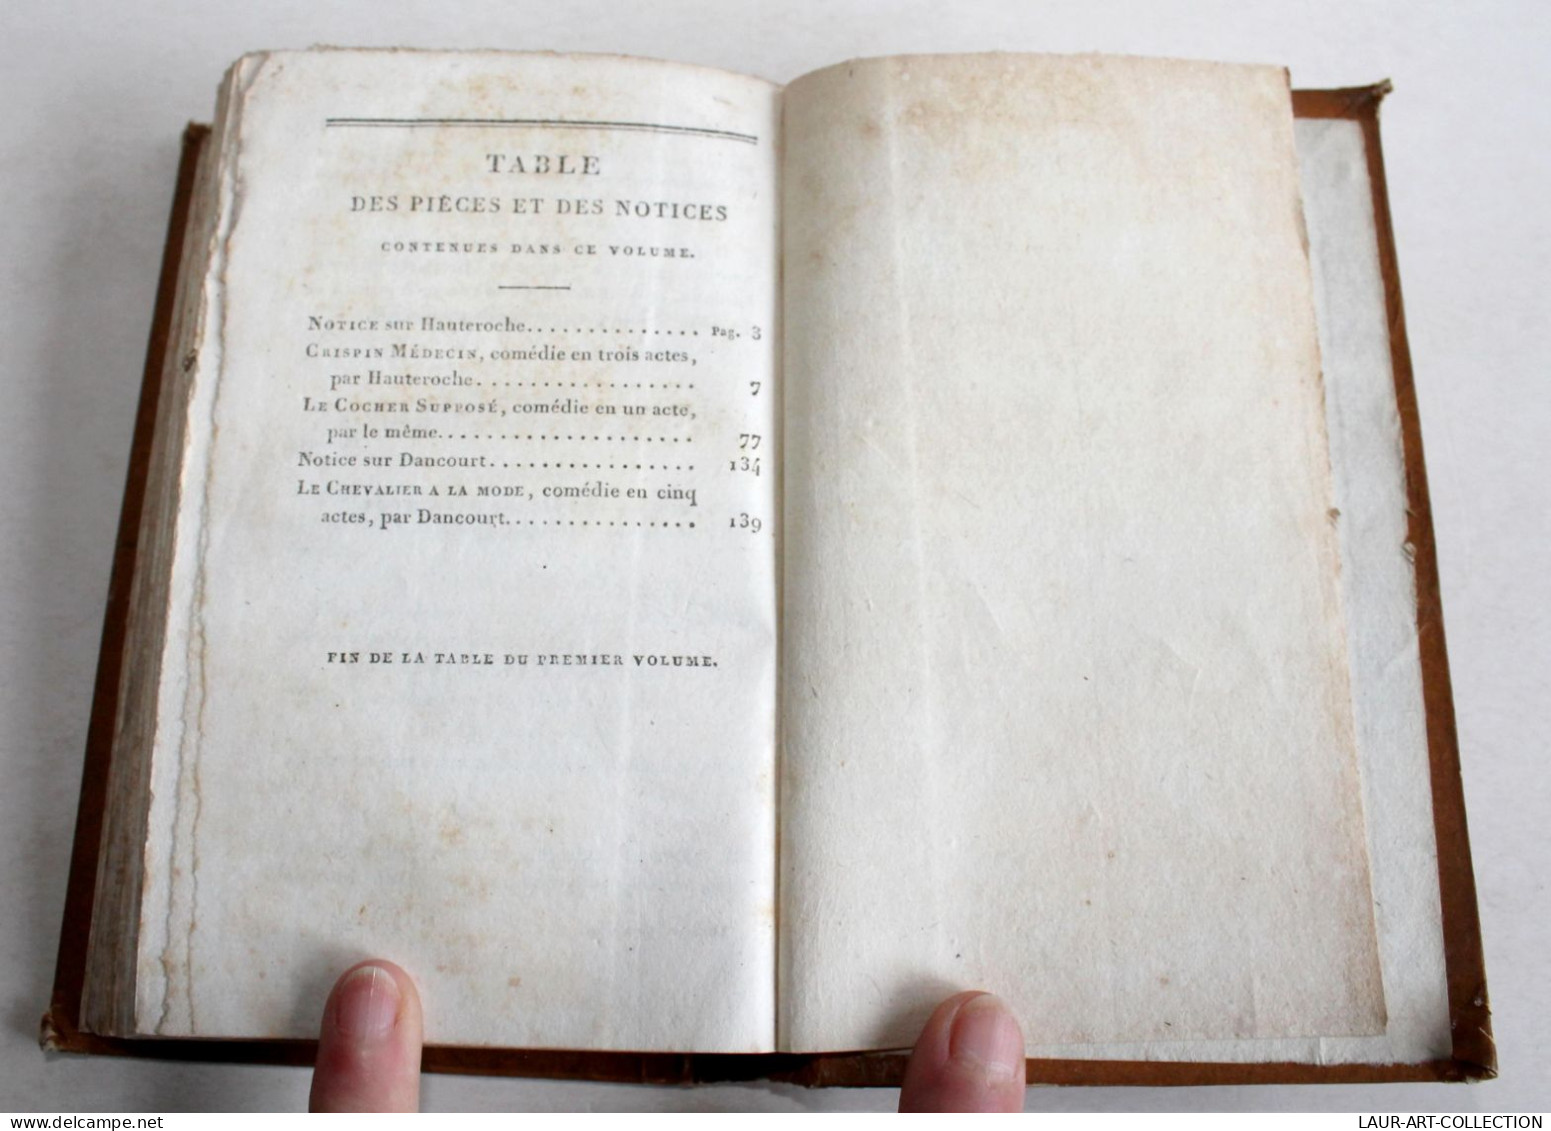 REPERTOIRE GENERAL DU THEATRE FRANCAIS, TRAGEDIES COMEDIES & DRAMES, TOME 1 1821 / ANCIEN LIVRE XIXe SIECLE (1803.245) - French Authors